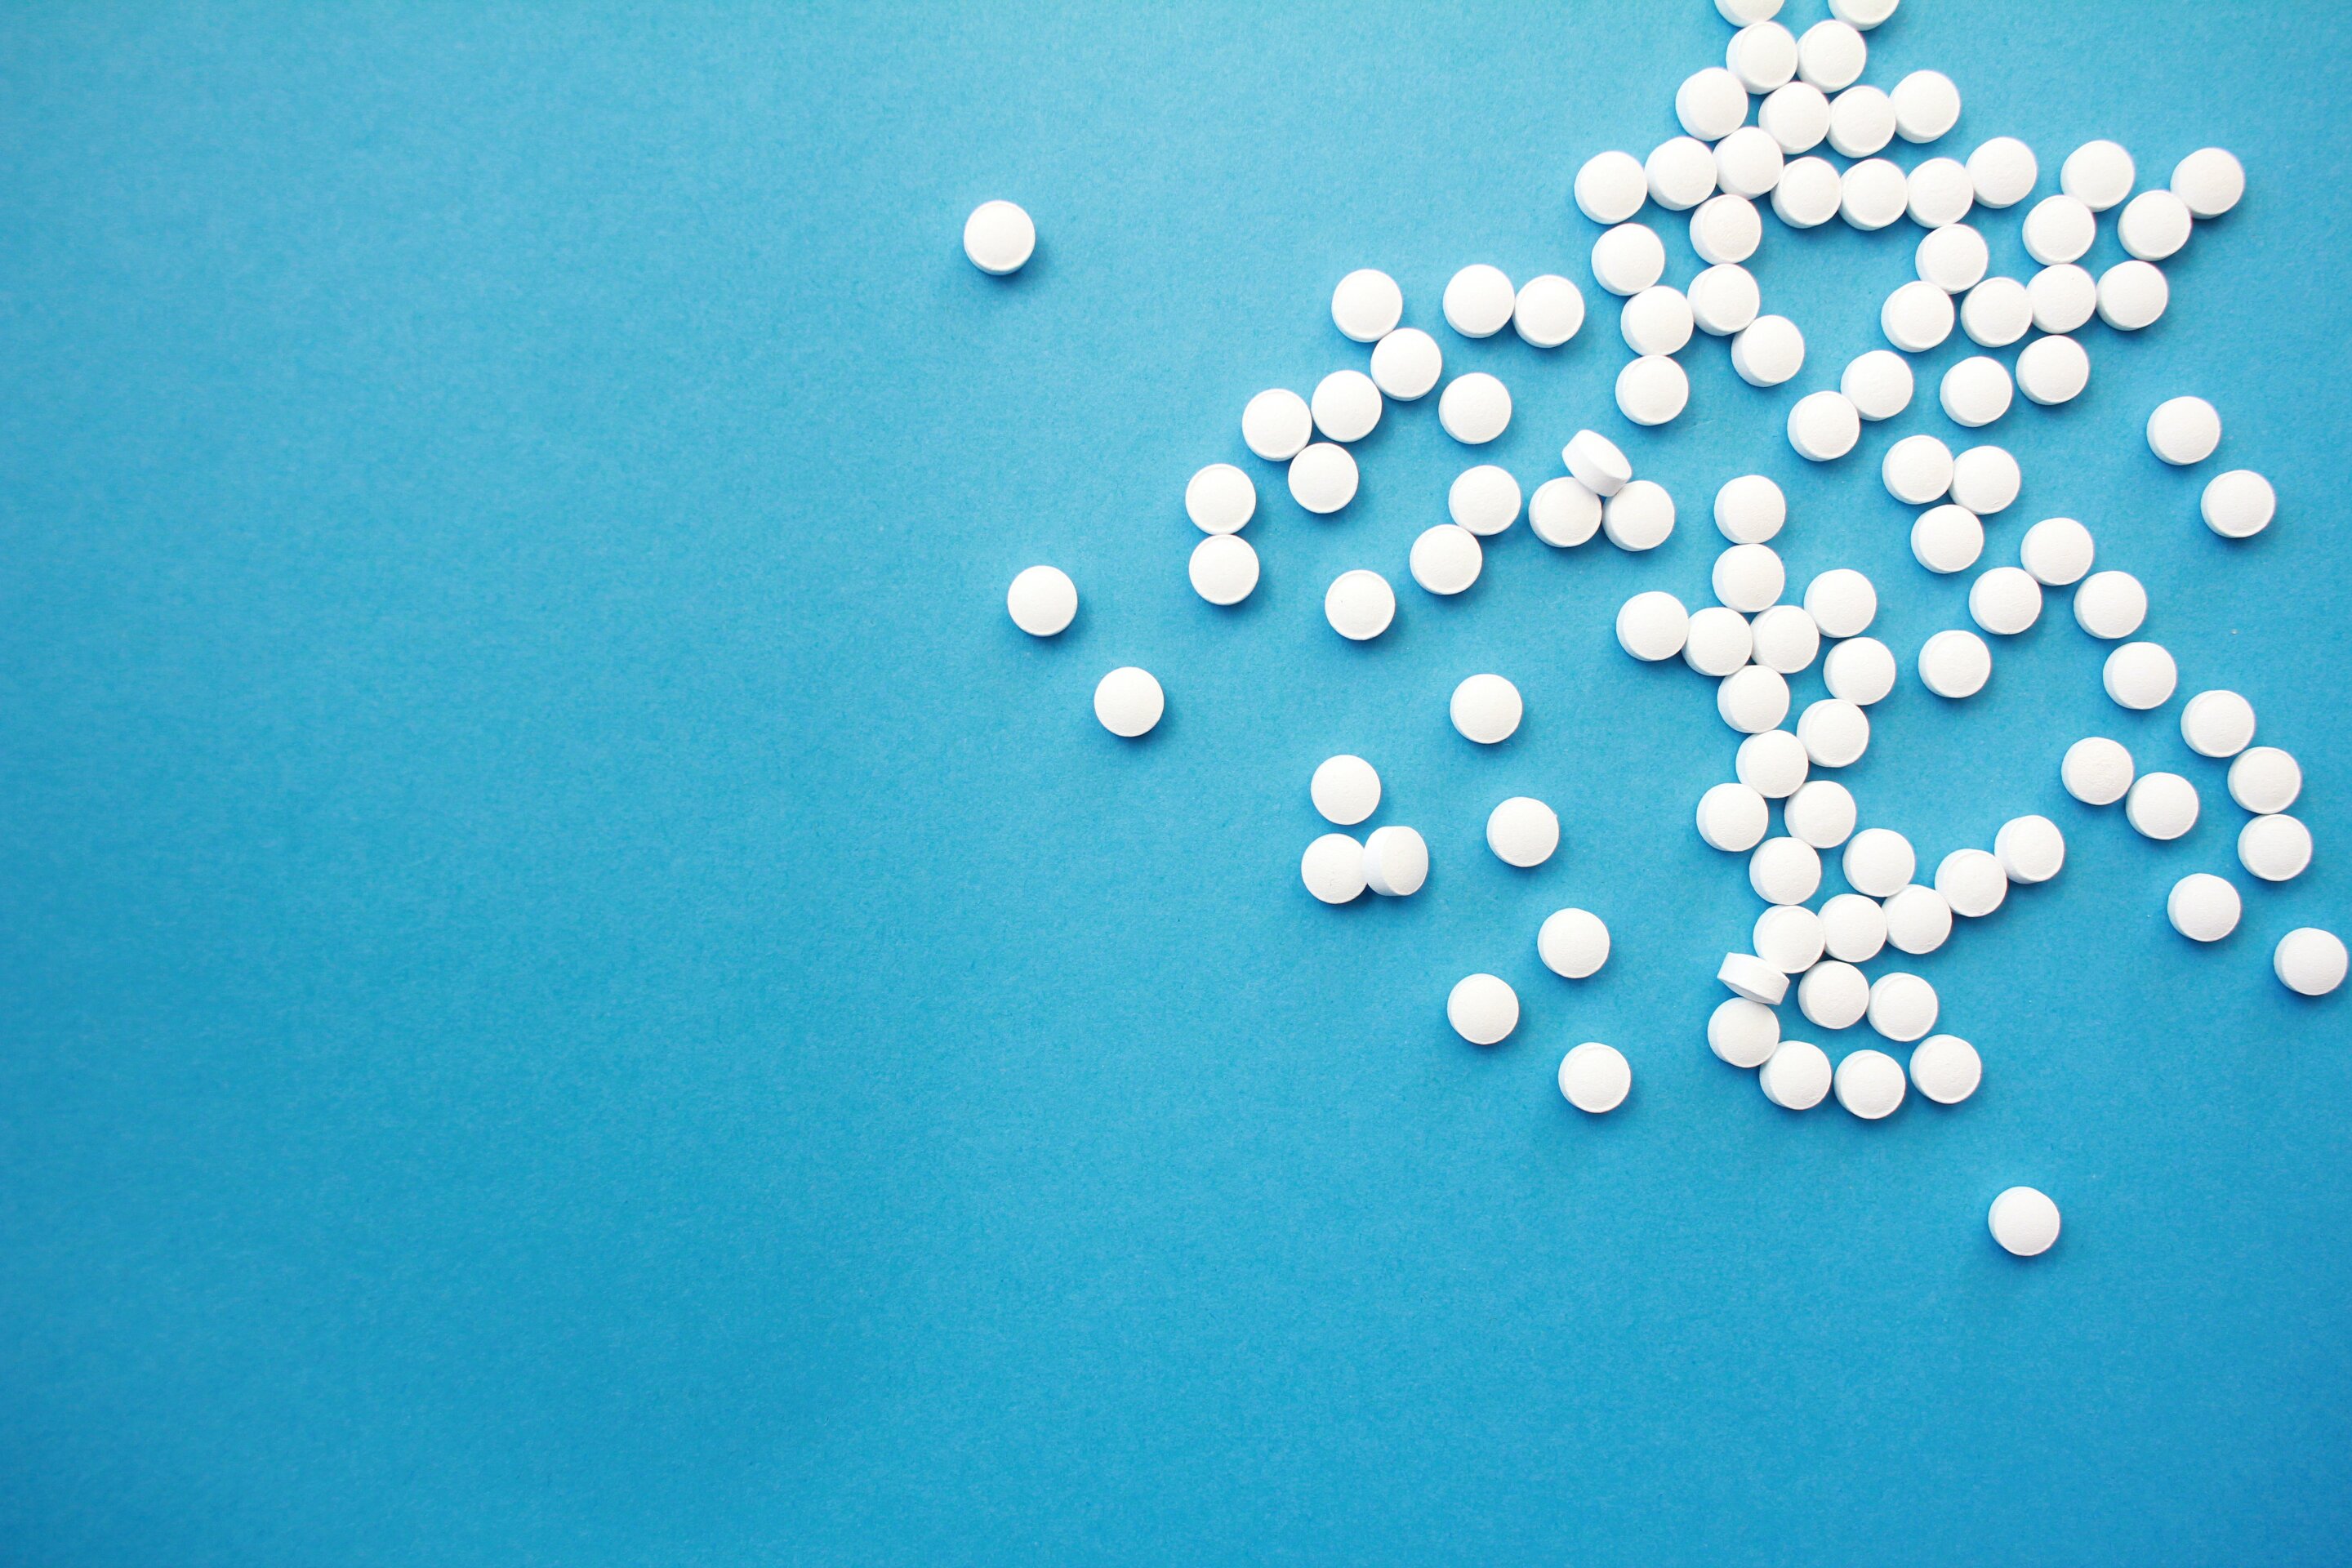 阿司匹林可以降低高遗传风险人群的卵巢癌发病率